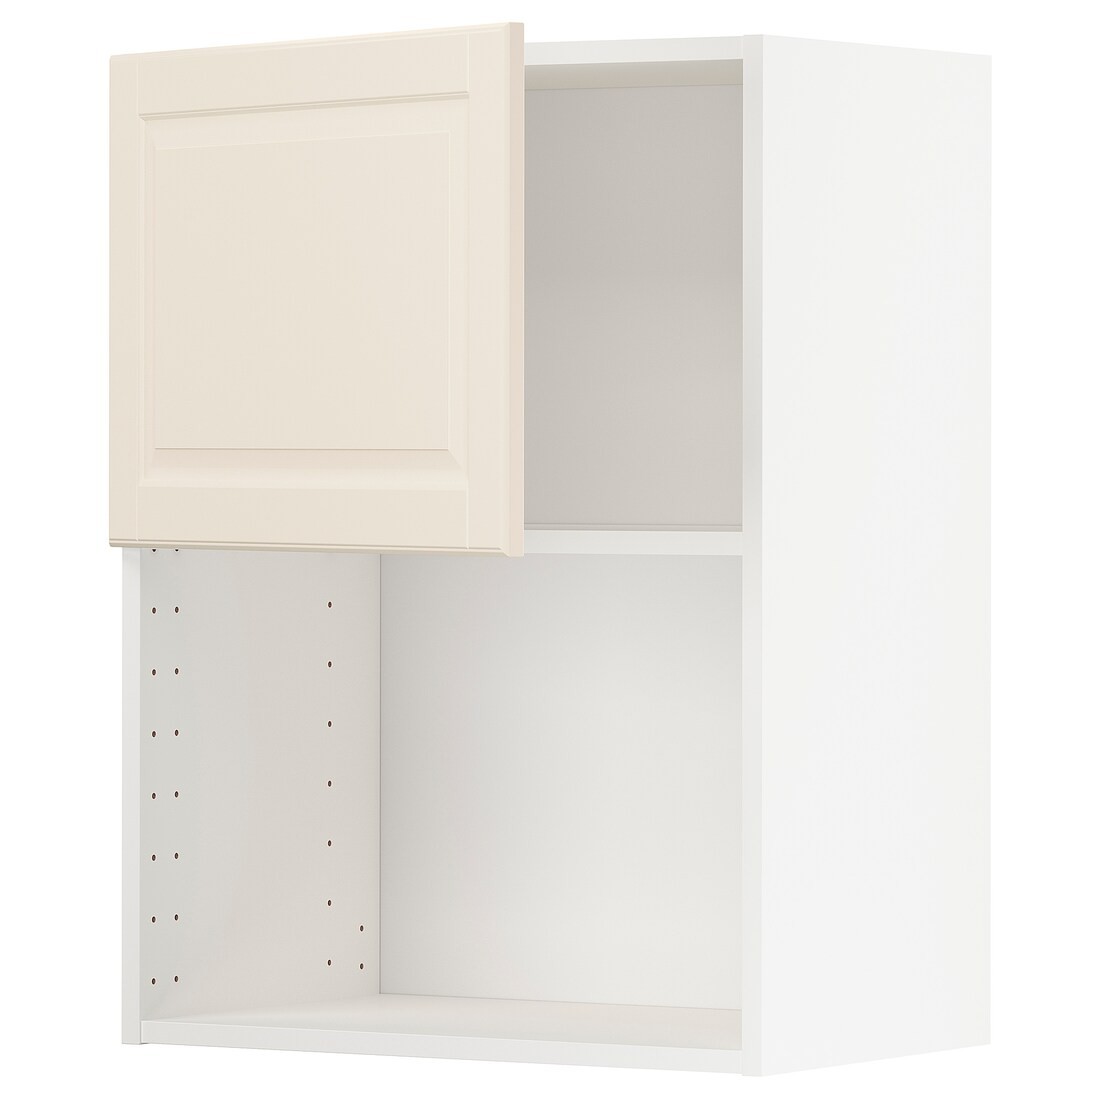 IKEA METOD МЕТОД Навісна шафа для НВЧ-печі, білий / Bodbyn кремовий, 60x80 см 79454917 794.549.17